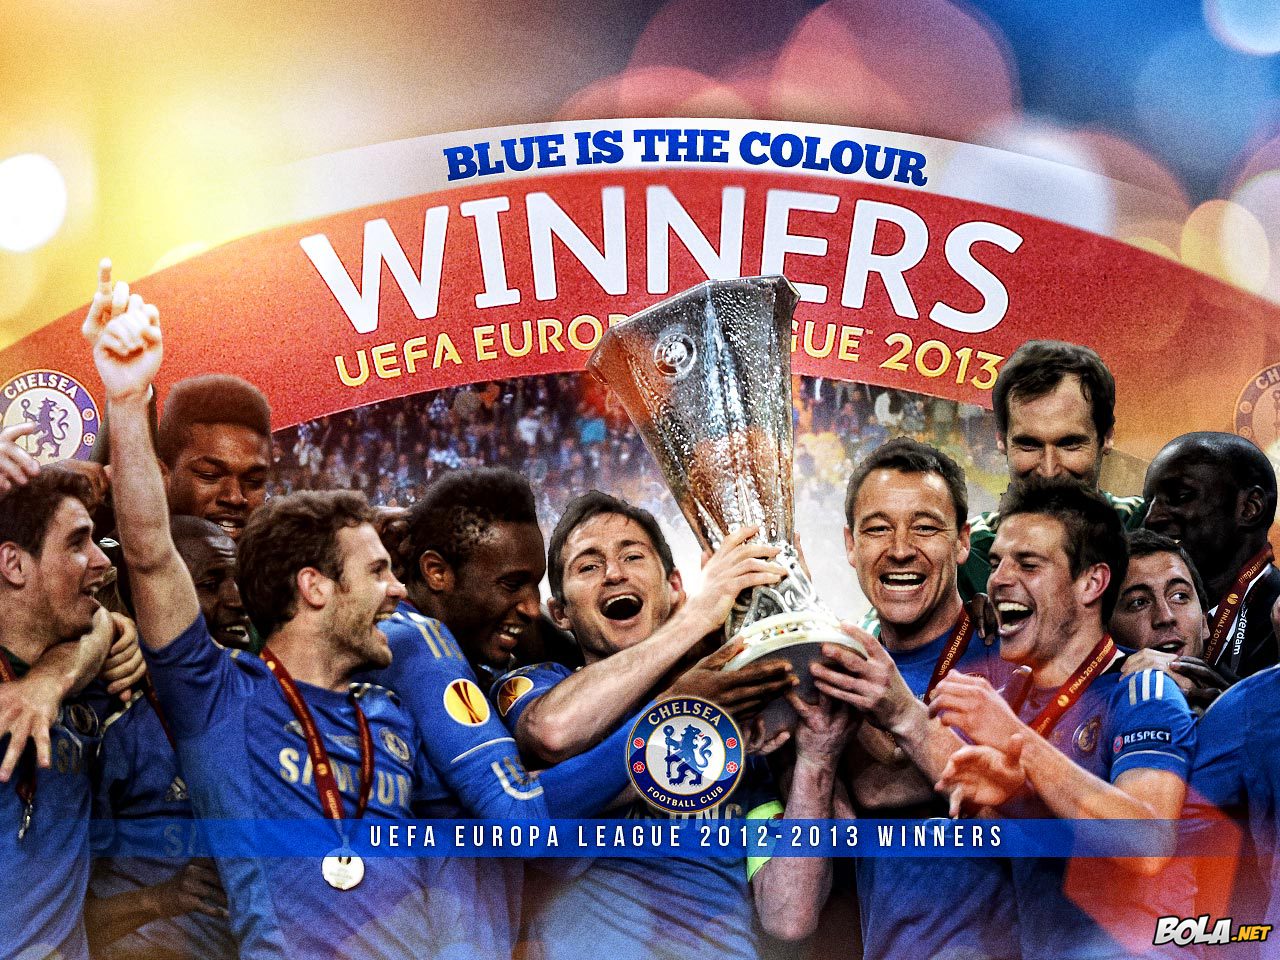 Deskripsi : Wallpaper Chelsea Europa League Winners, size: 1280x960